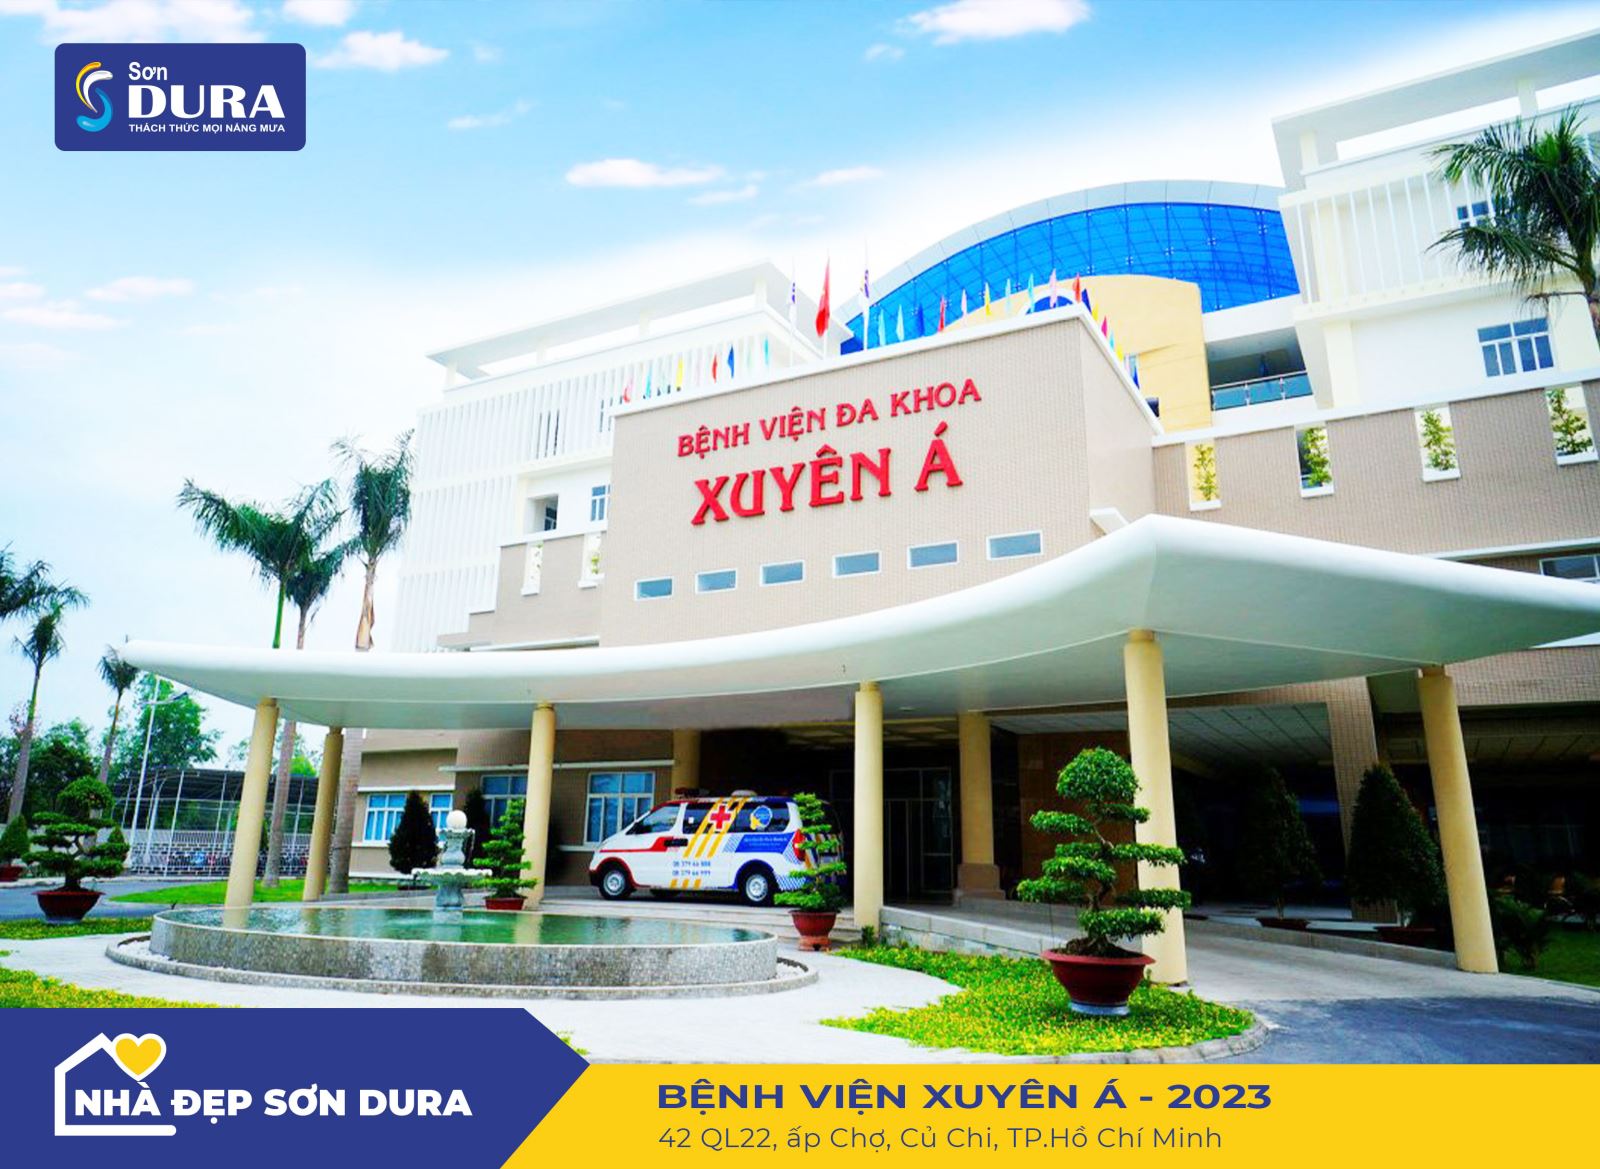 Bệnh viện Xuyên Á là bệnh viện lớn nhất trong khu vực Củ Chi.